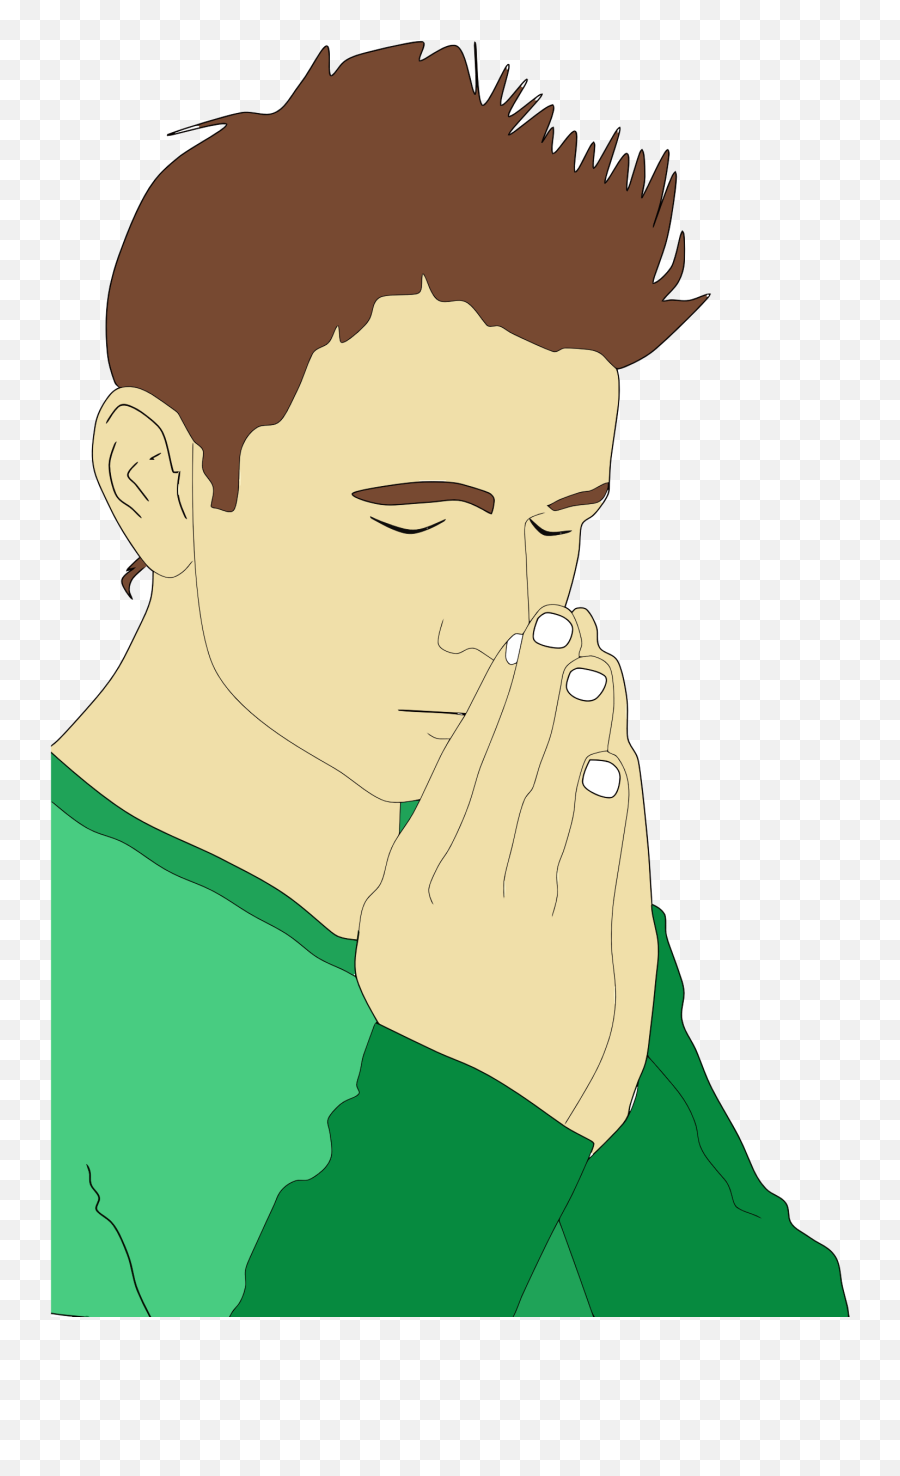 Clipart Man Praying - Man Praying Clipart Emoji,Pray Clipart